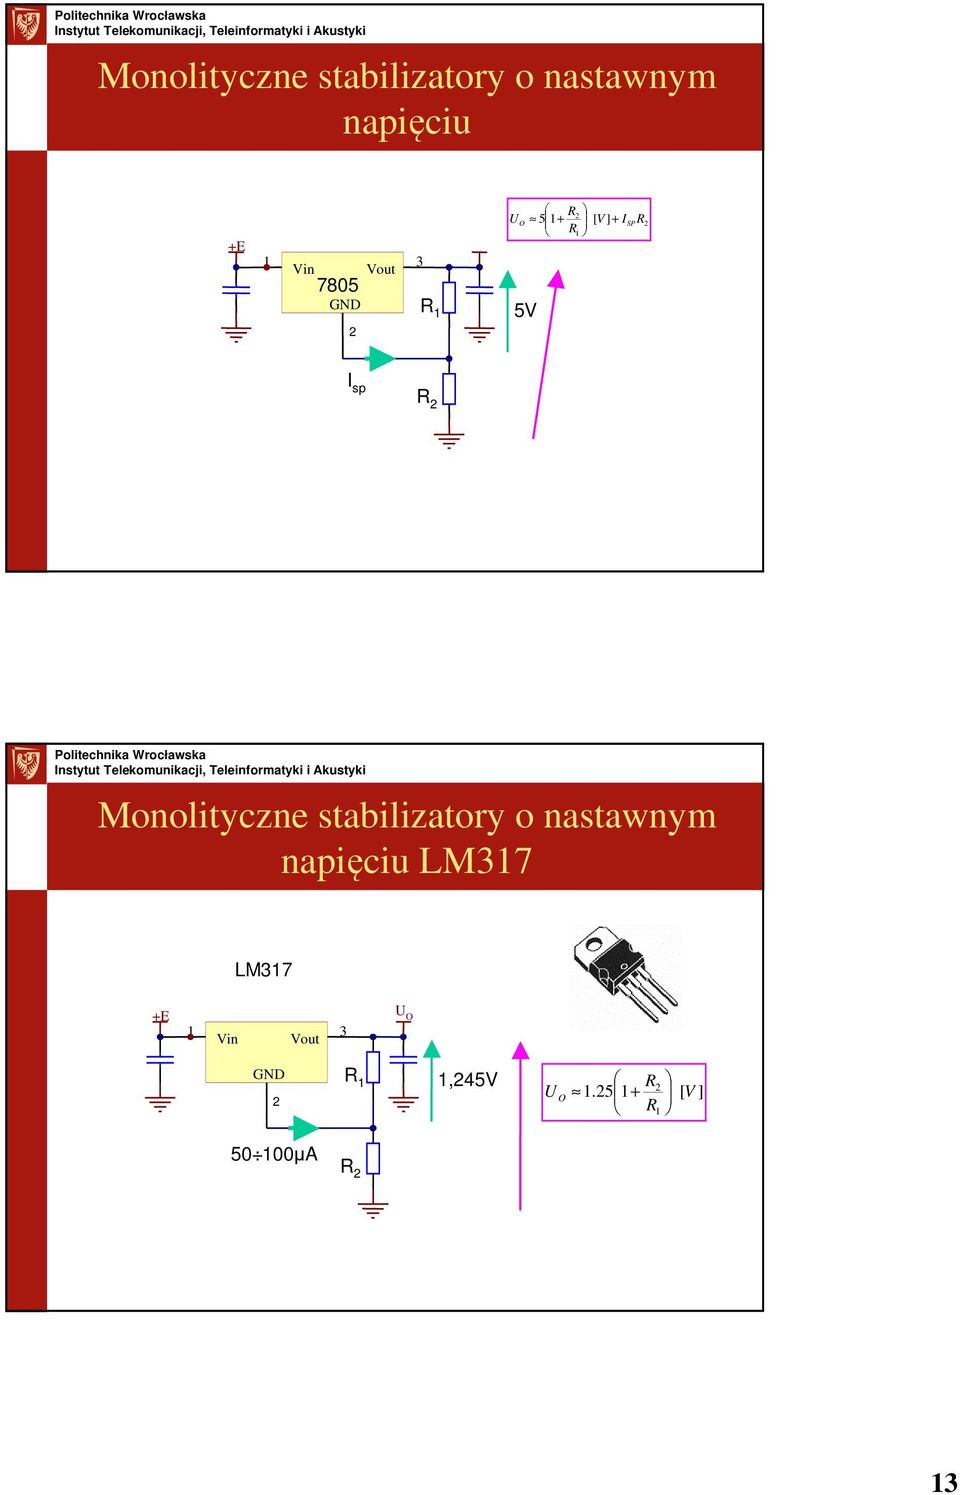 stabilizatry nastawnym napięciu LM37 LM37 Vin Vut 3 O GND R,45V O R.